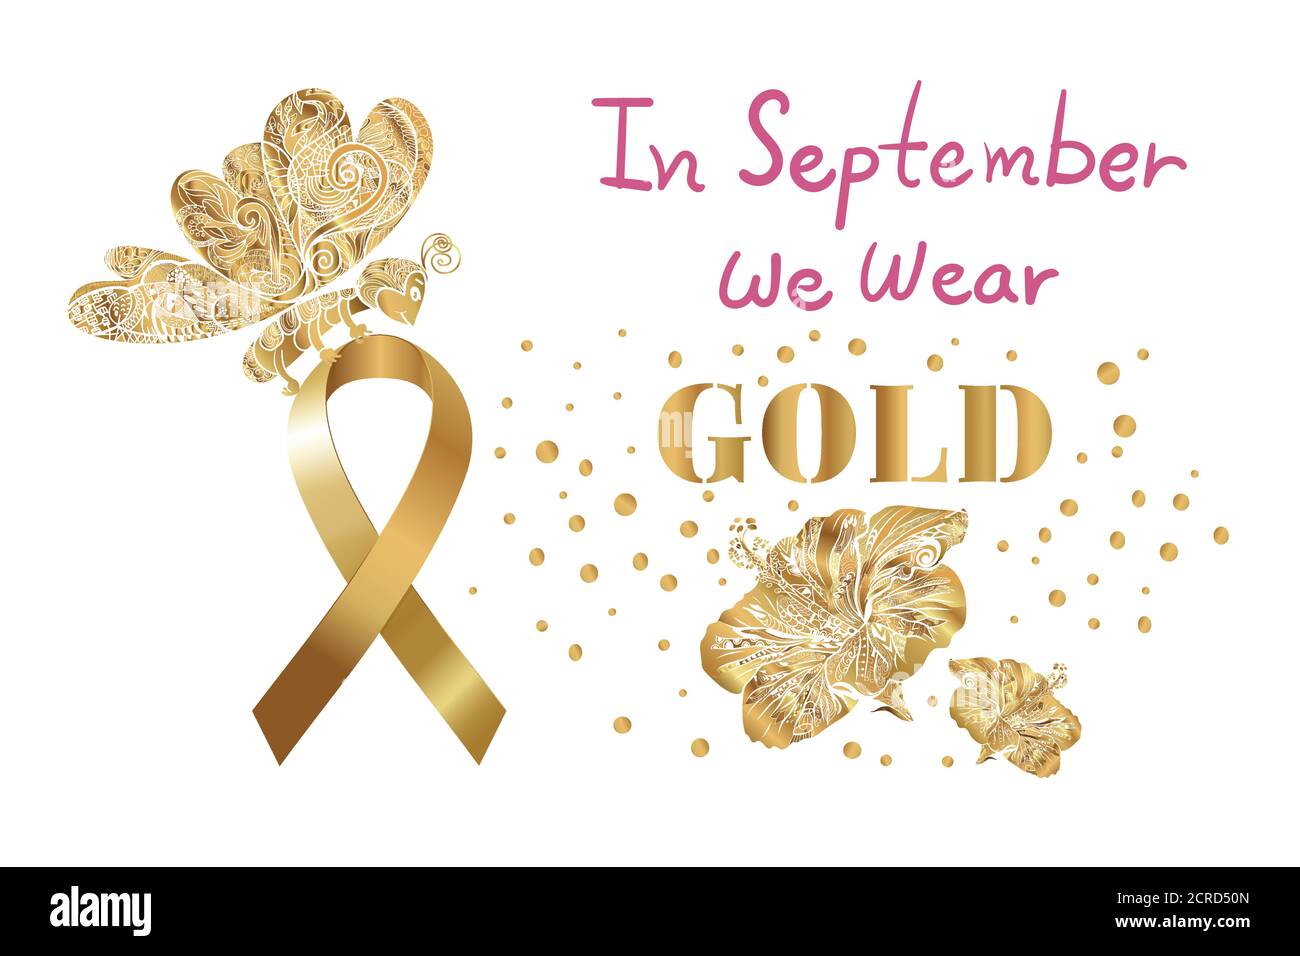 El mes de concienciación sobre el cáncer infantil, la mariposa mantener cinta de oro, flor con letras rosadas, en septiembre se desgaste oro, sobre fondo blanco. Ilustración del Vector